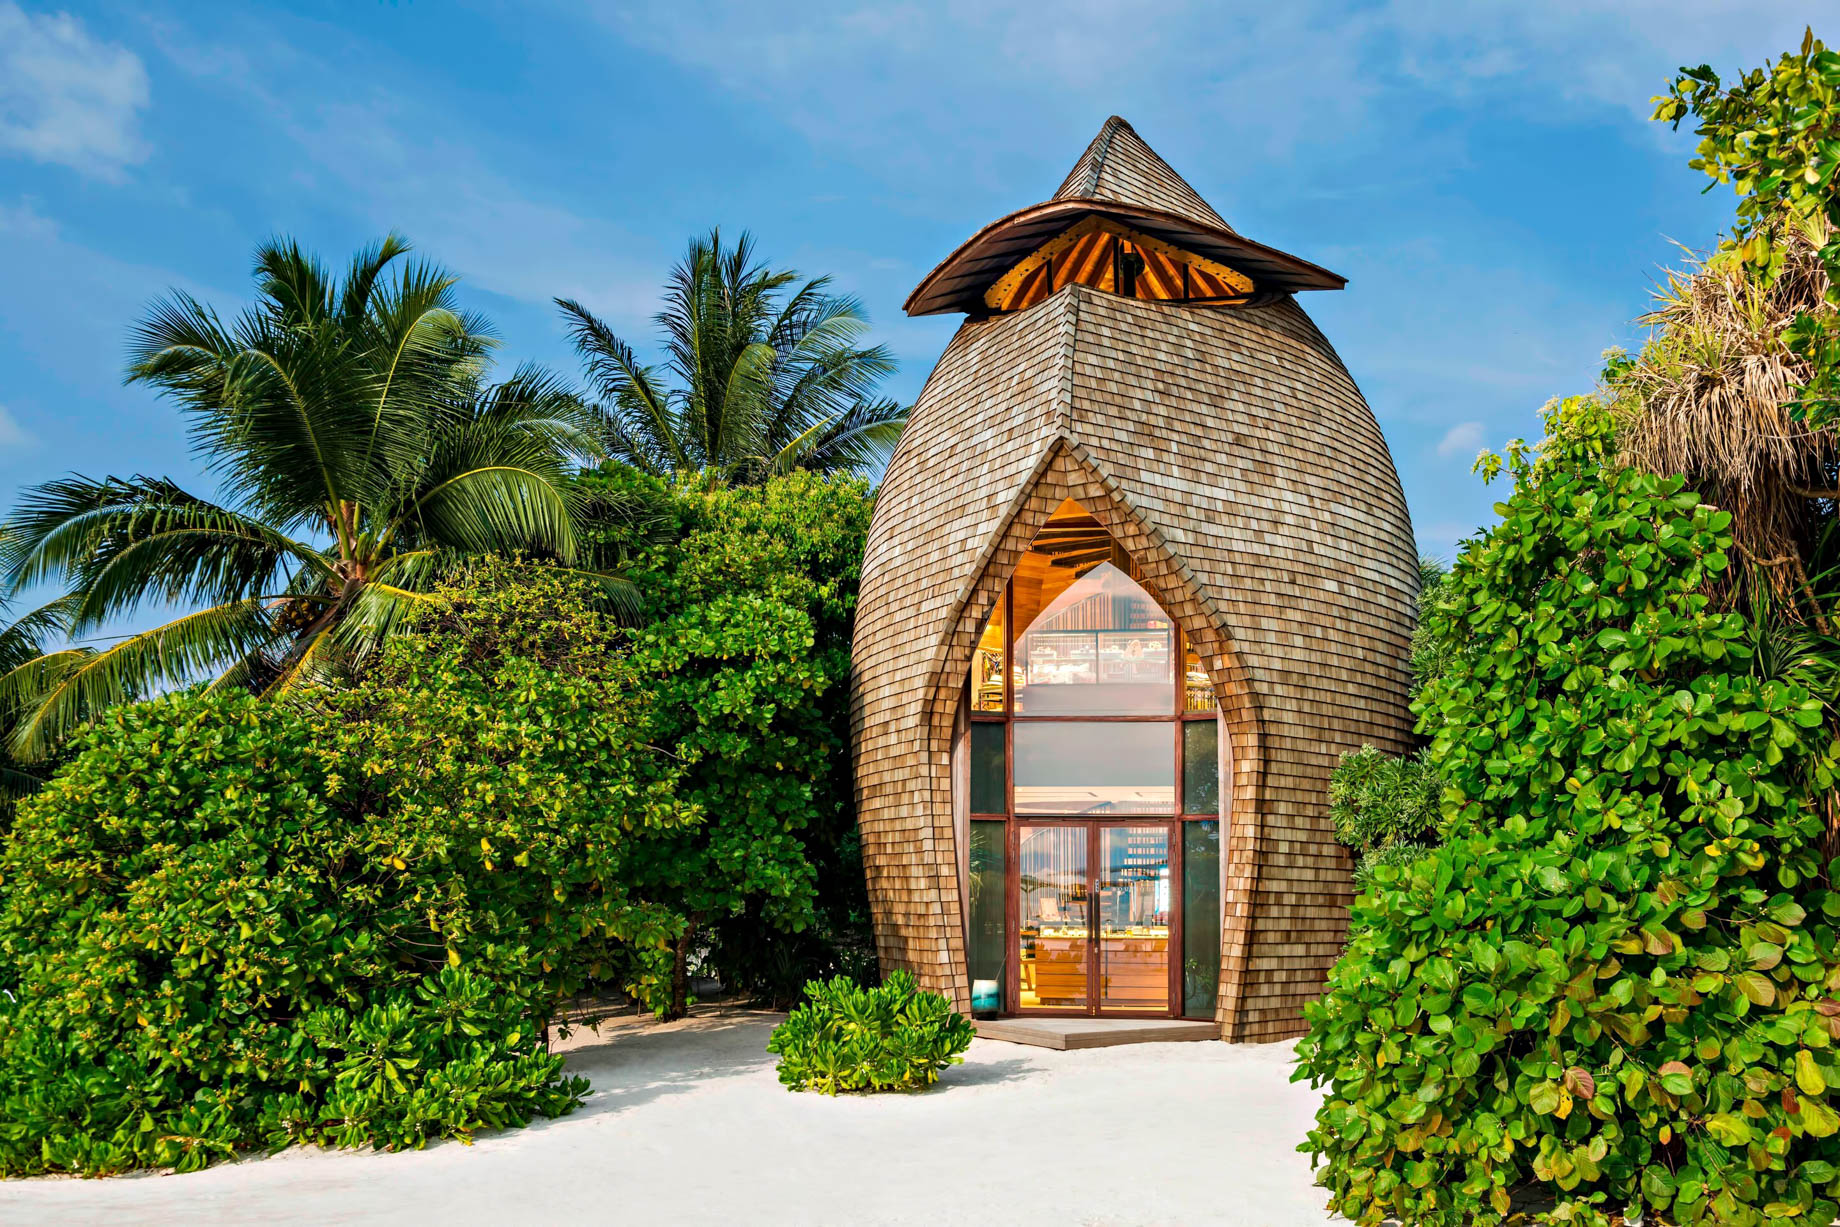 The St. Regis Maldives Vommuli Resort – Dhaalu Atoll, Maldives – St. Regis Boutique